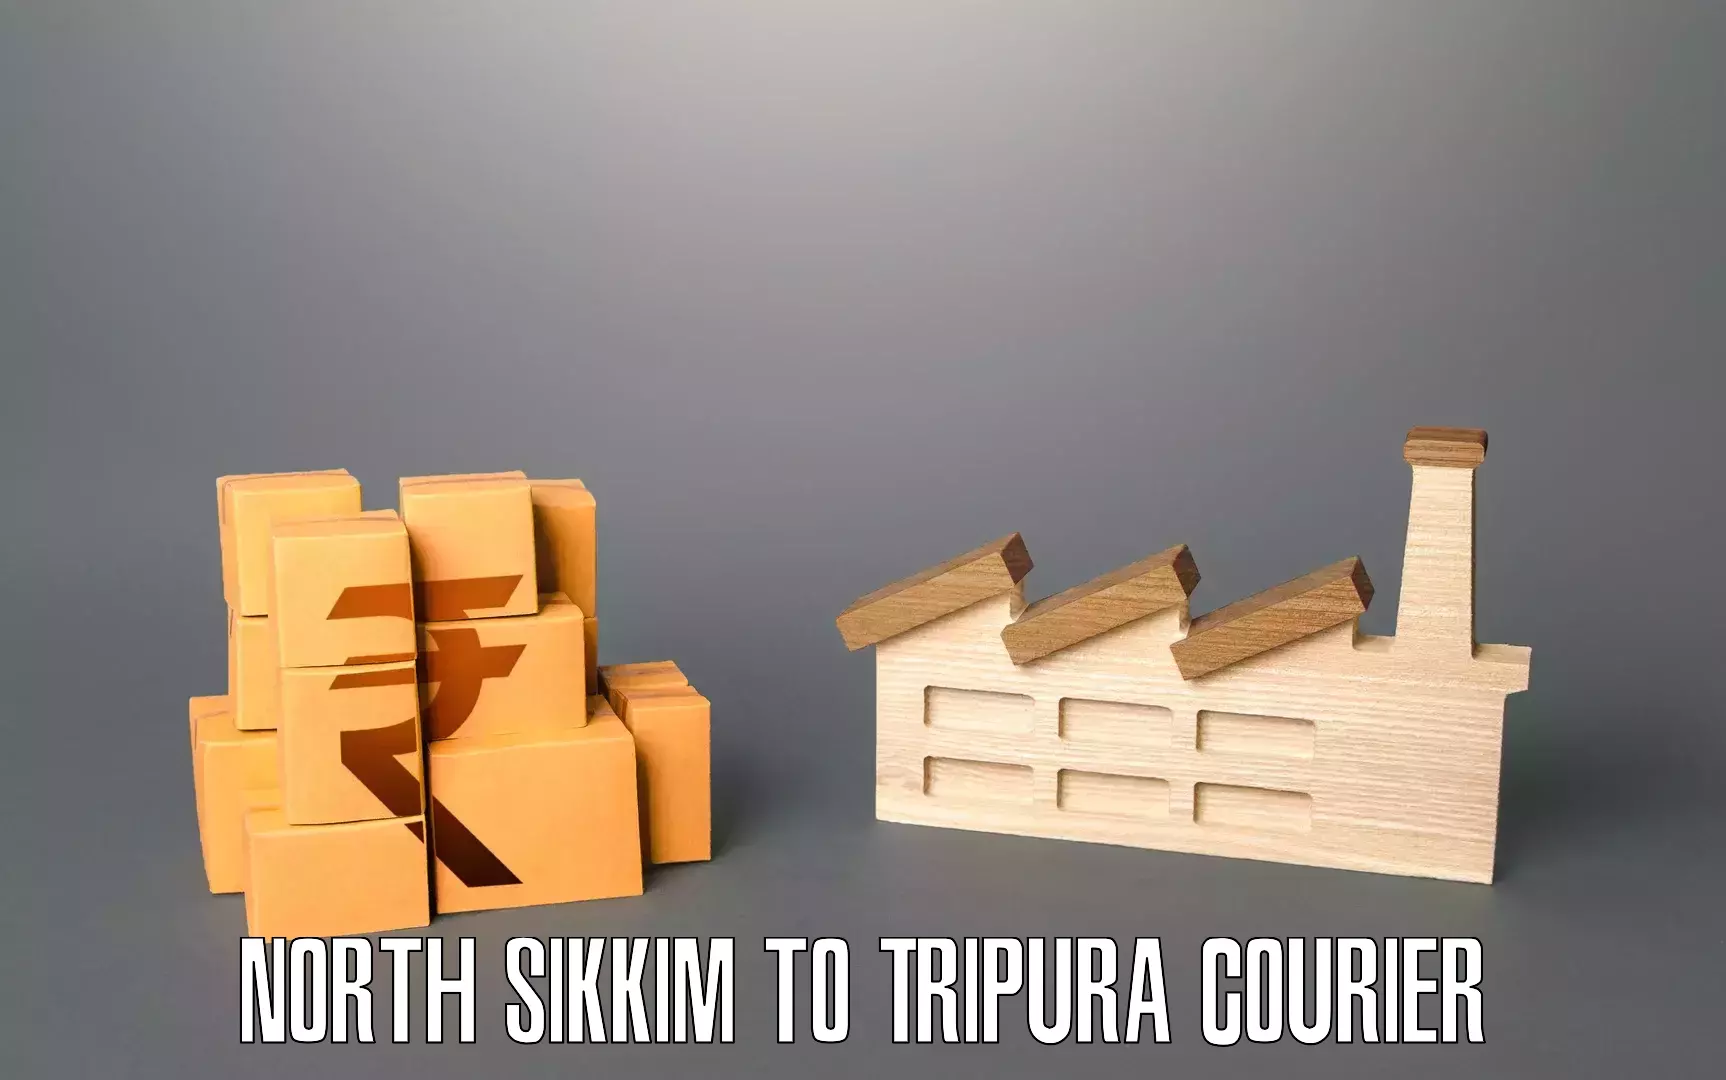 Premium moving services North Sikkim to Tripura